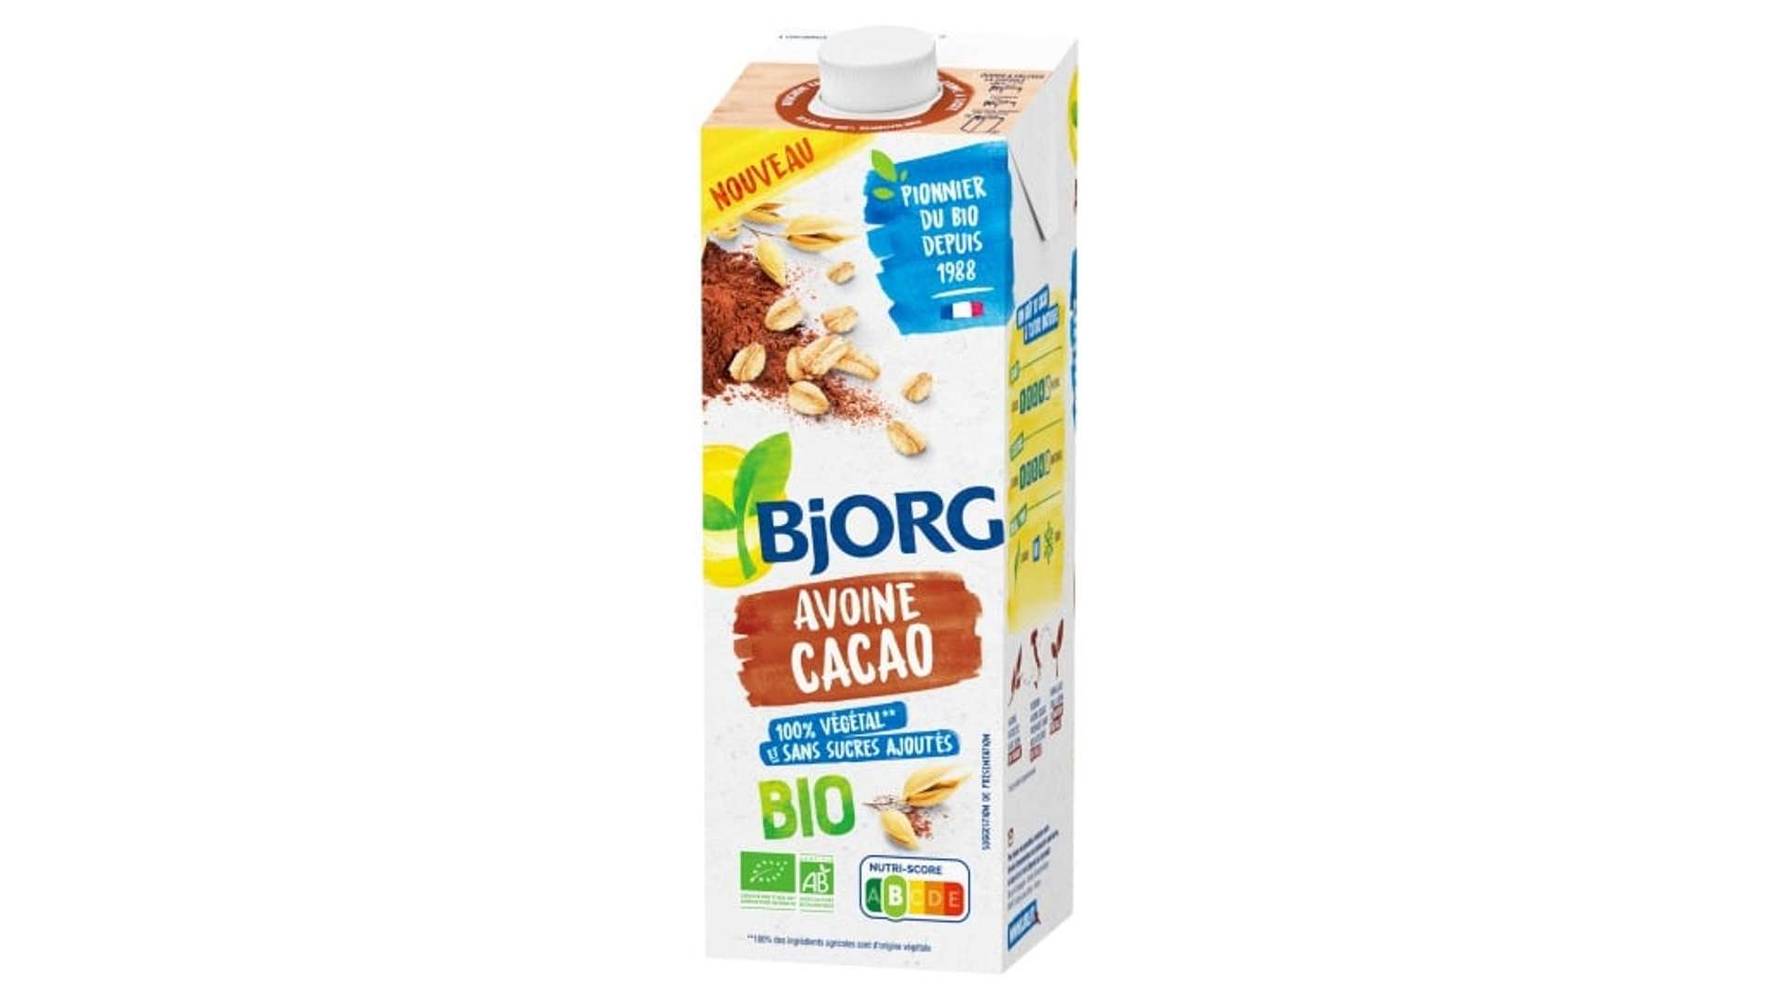 Bjorg - Boisson végétale bio vegetal avoine cacao (1L)